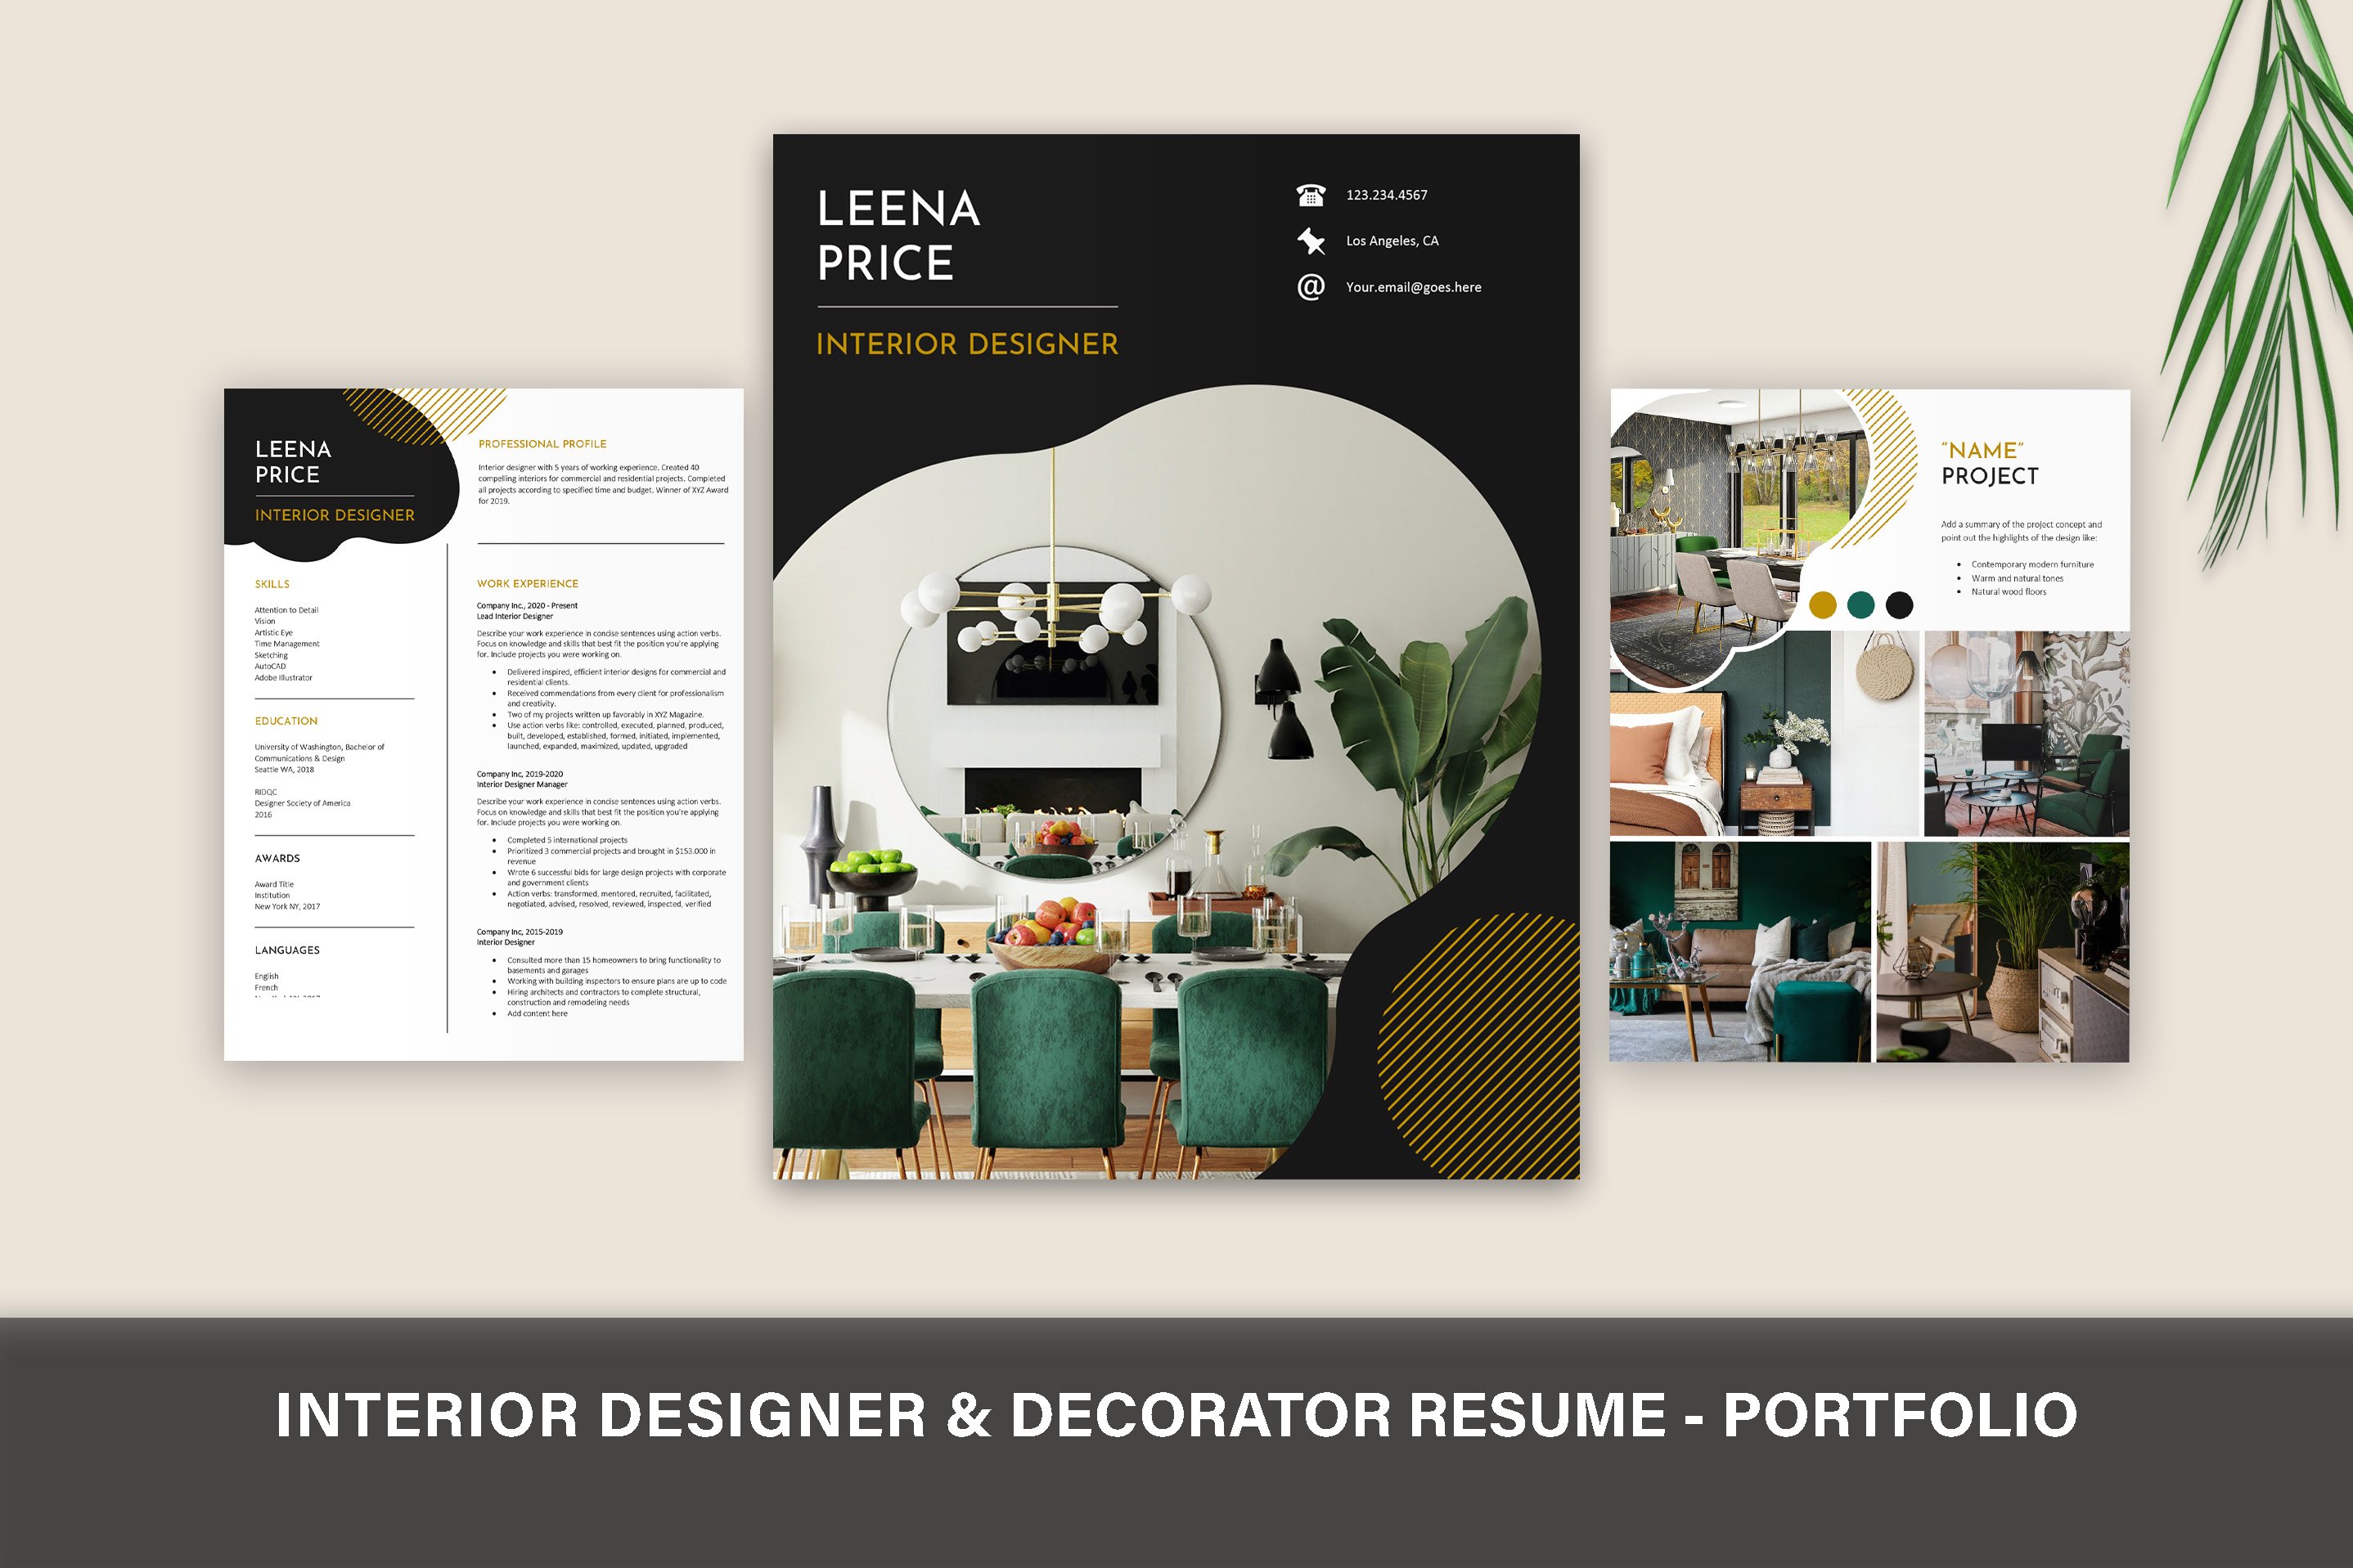 Interior Designer Resume - Portfolio cover image.